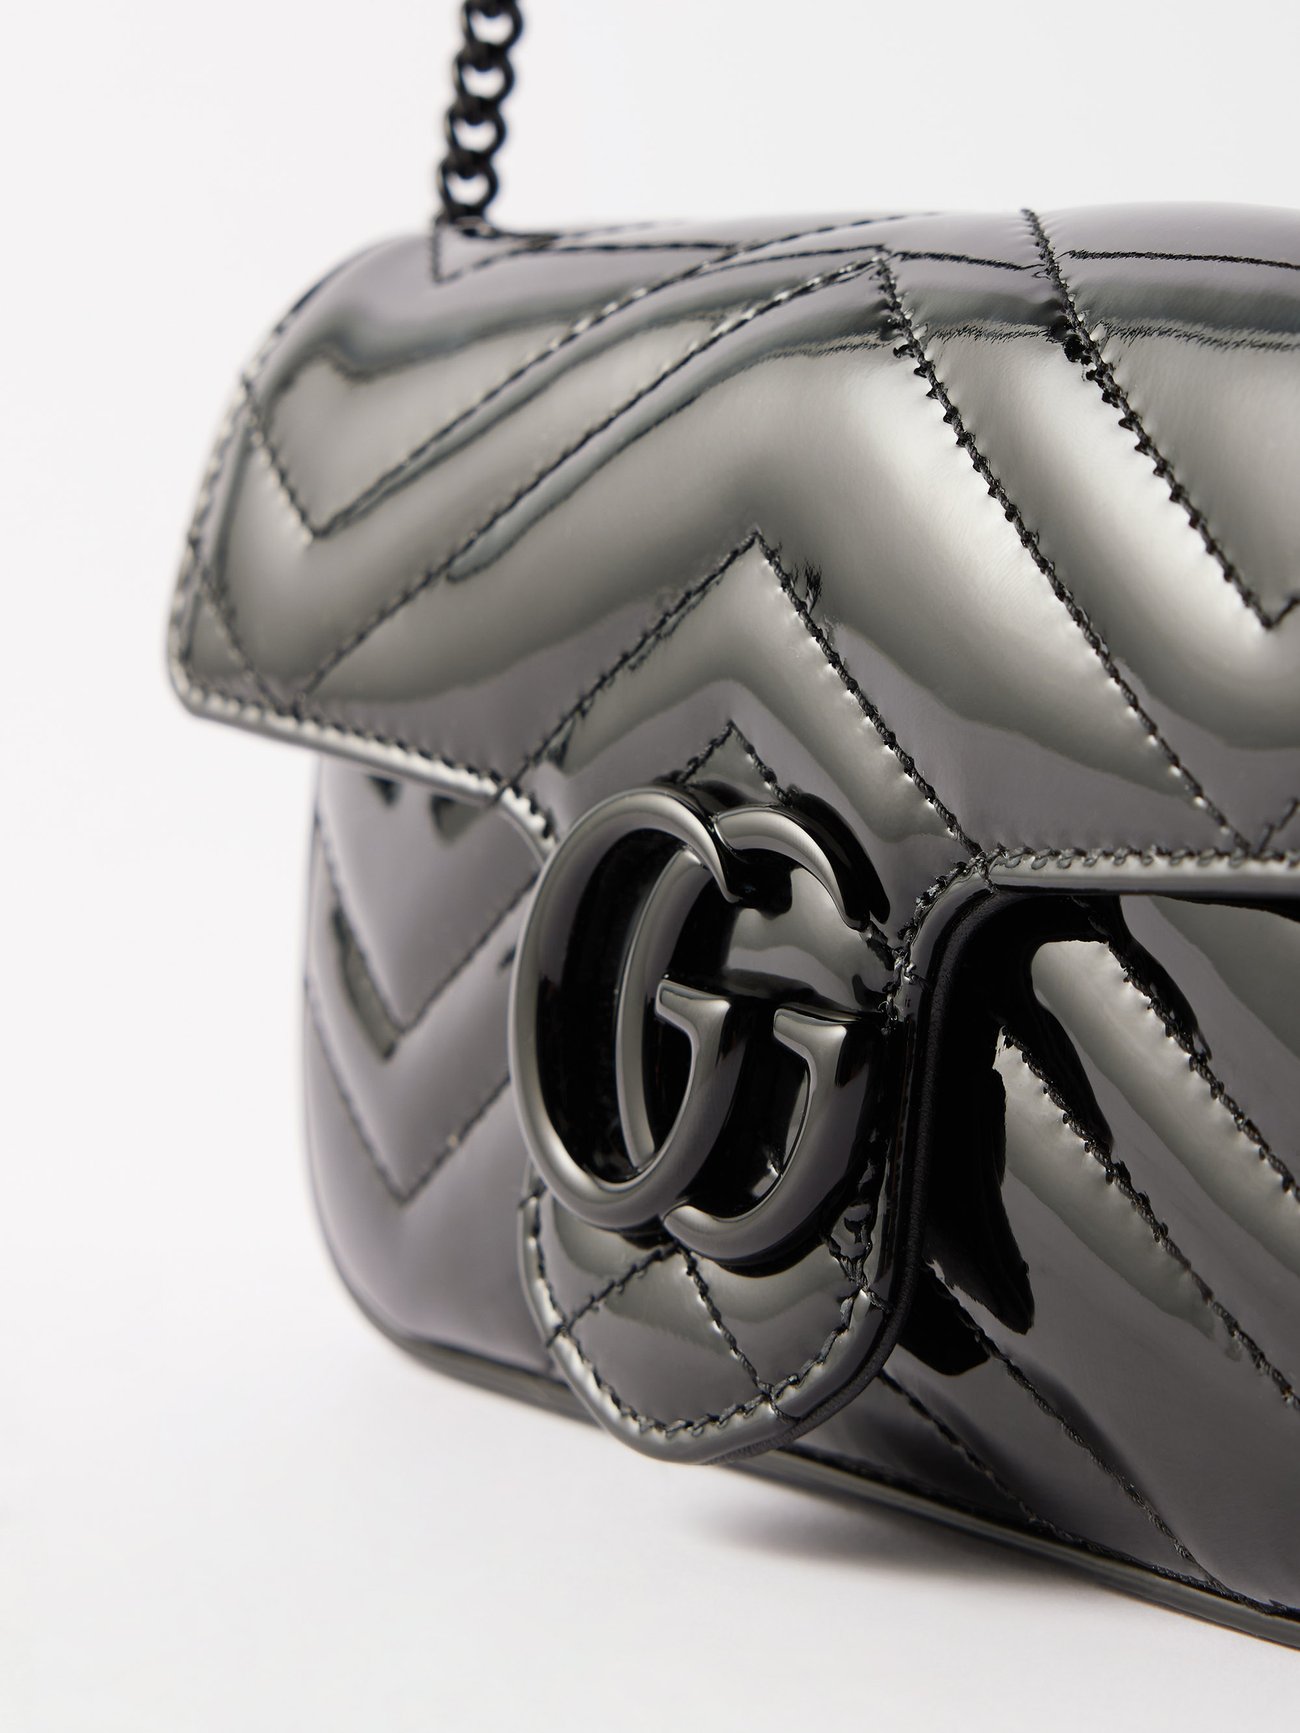 Black GG Marmont patent-leather shoulder bag